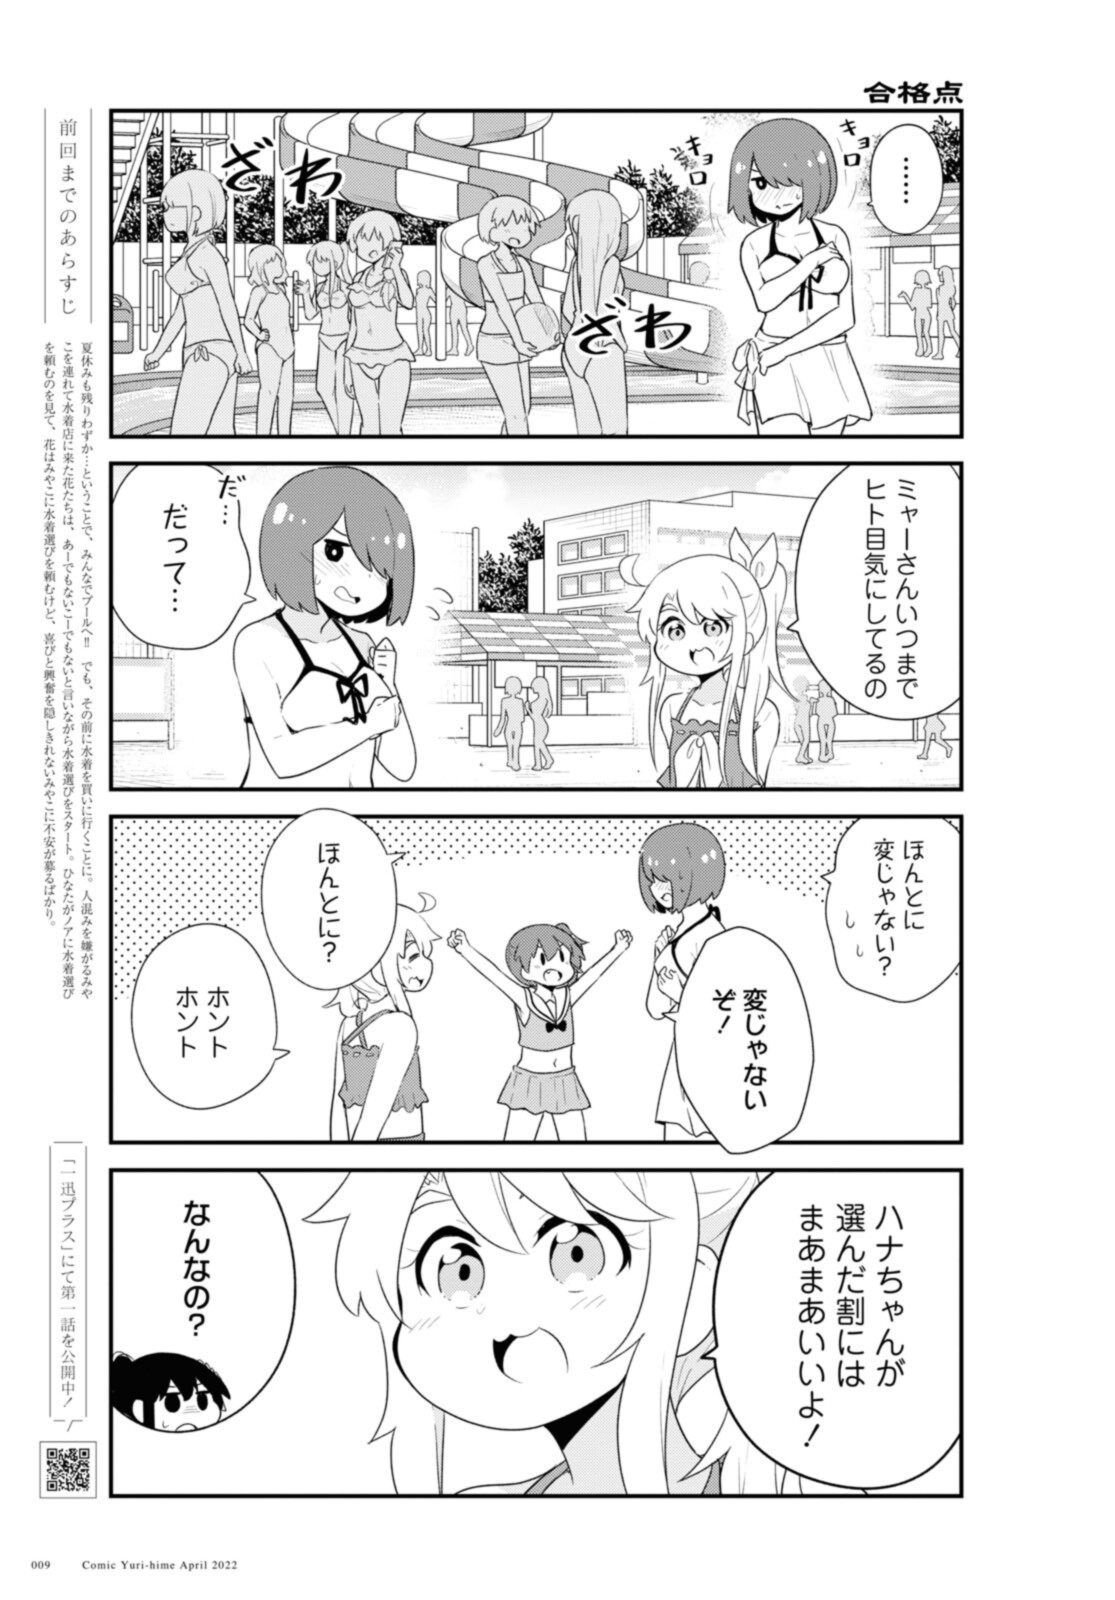 Watashi ni Tenshi ga Maiorita! - Chapter 94.1 - Page 5